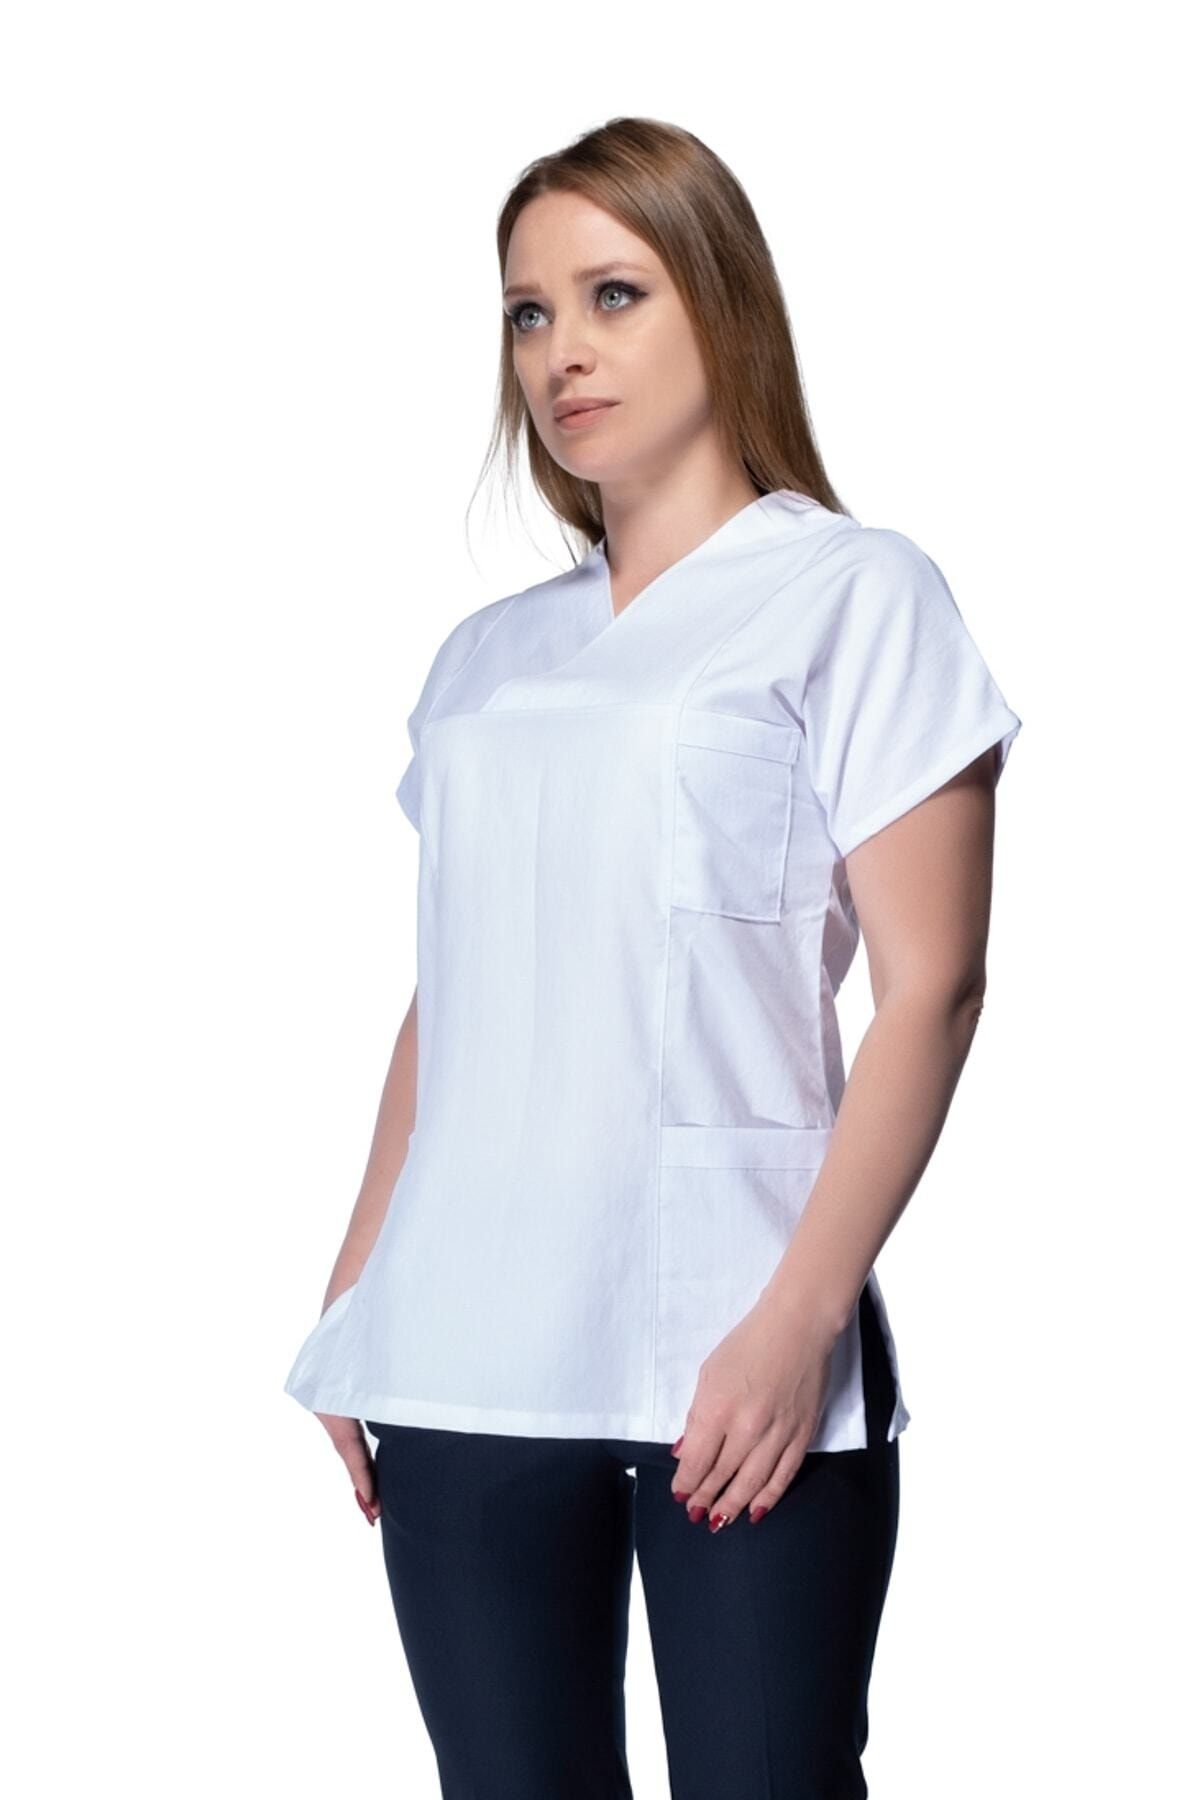 Tekbir Cerrahi Yaka Hemşire Gömleği (tek Üst)beyaz Kısa Kollu Hemşire Gömleği Doktor Göleği Önlüğü Alpaka